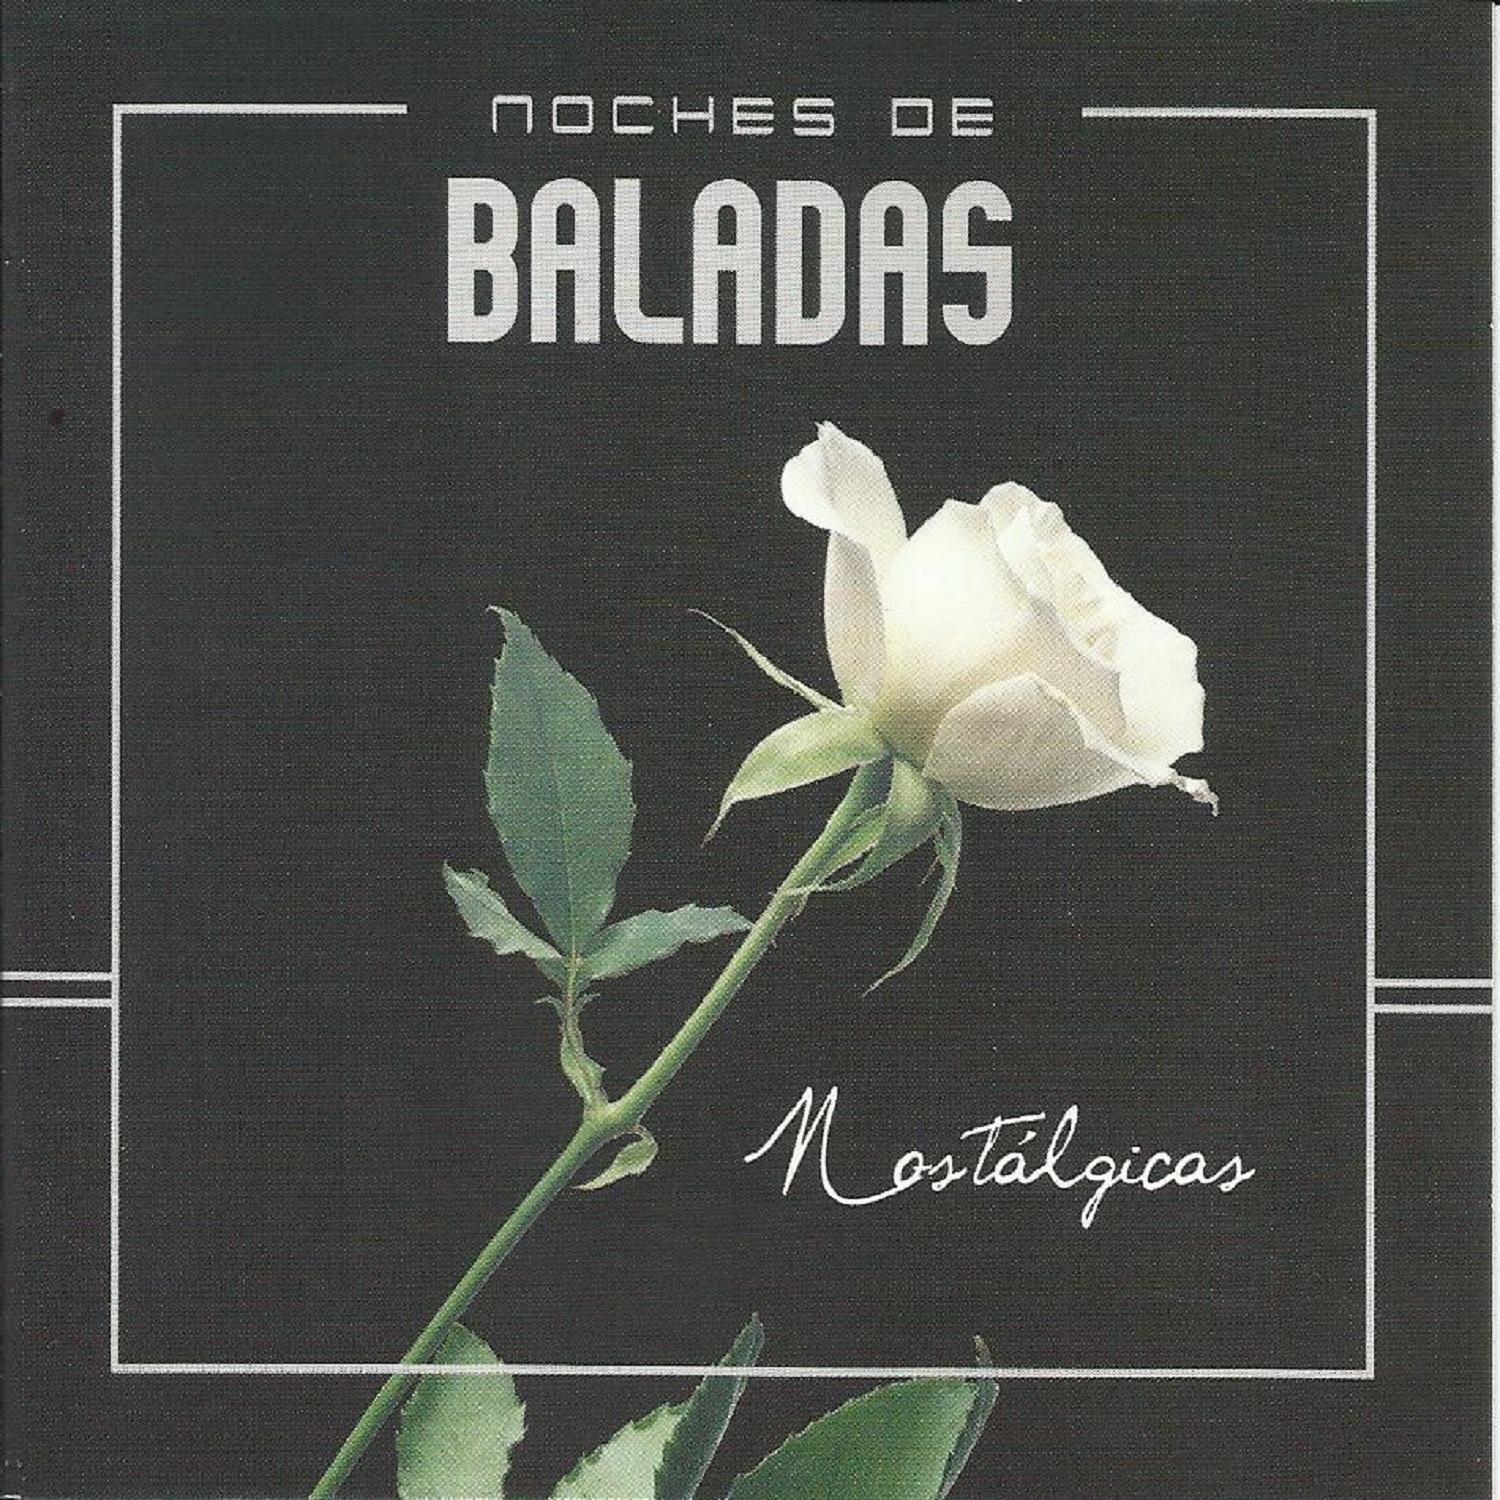 Noche de Baladas (Nostalgicas)